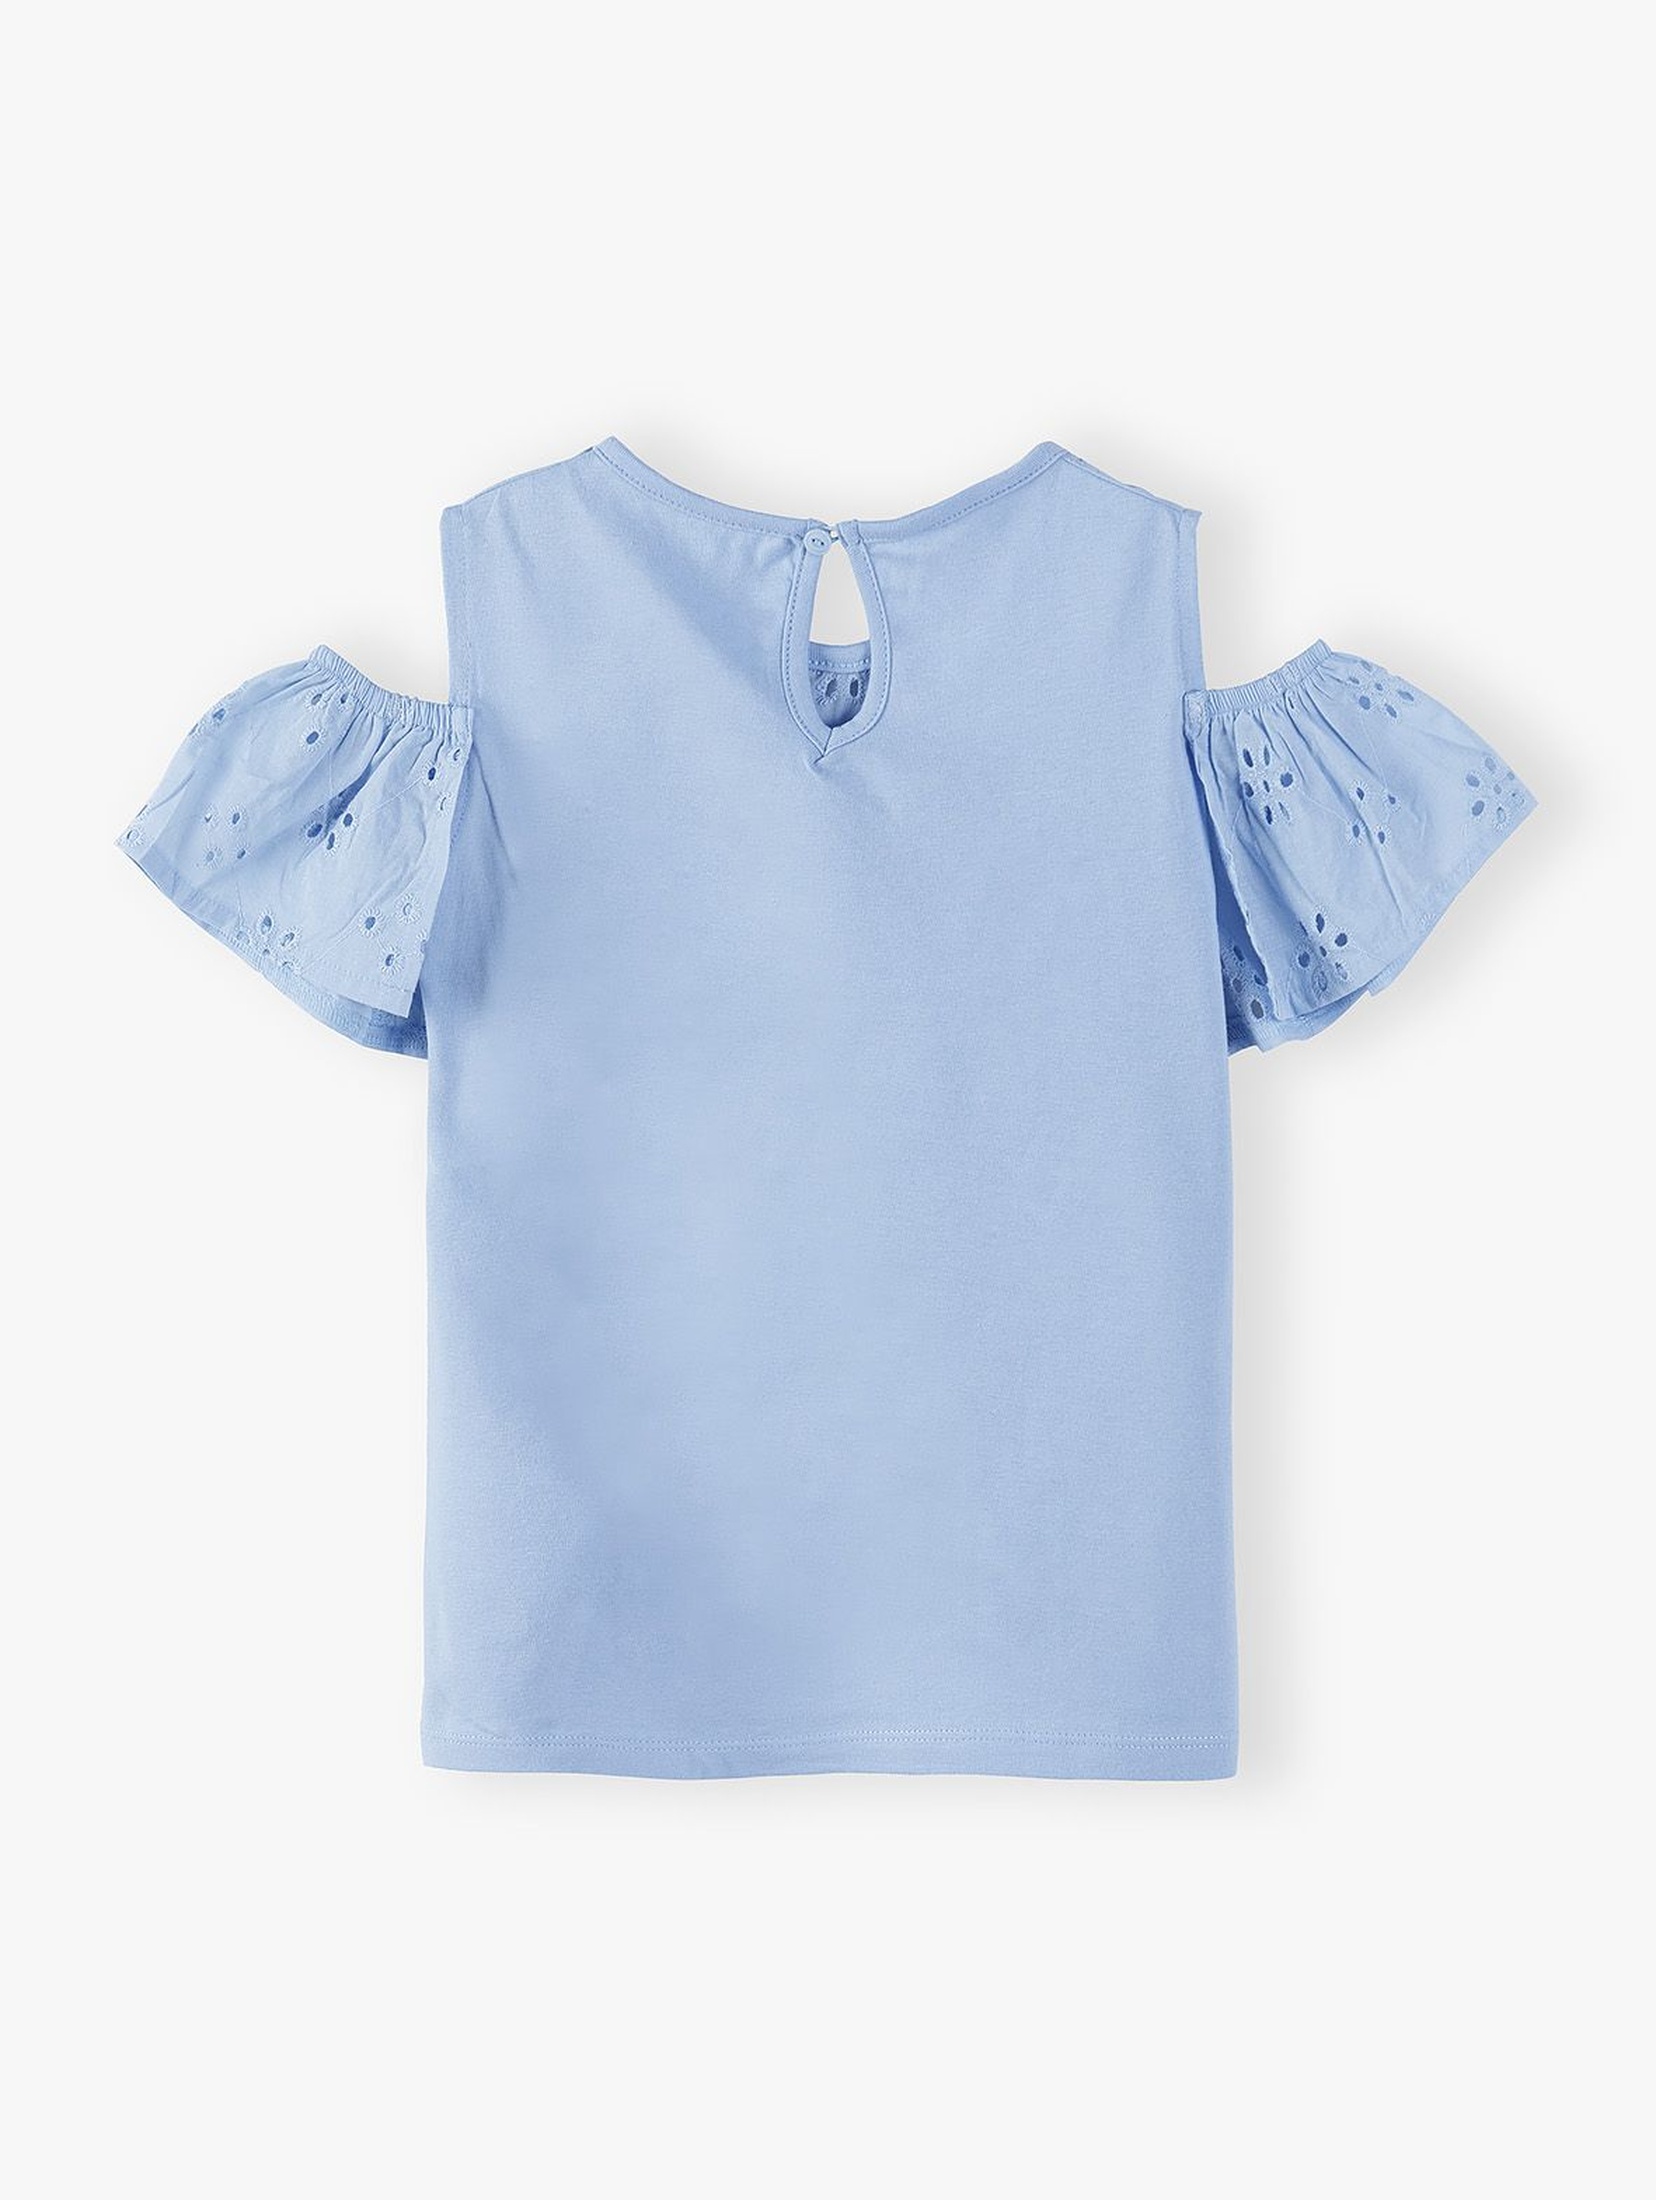 T-shirt dziewczęcy - niebieski z ozdobnymi haftami